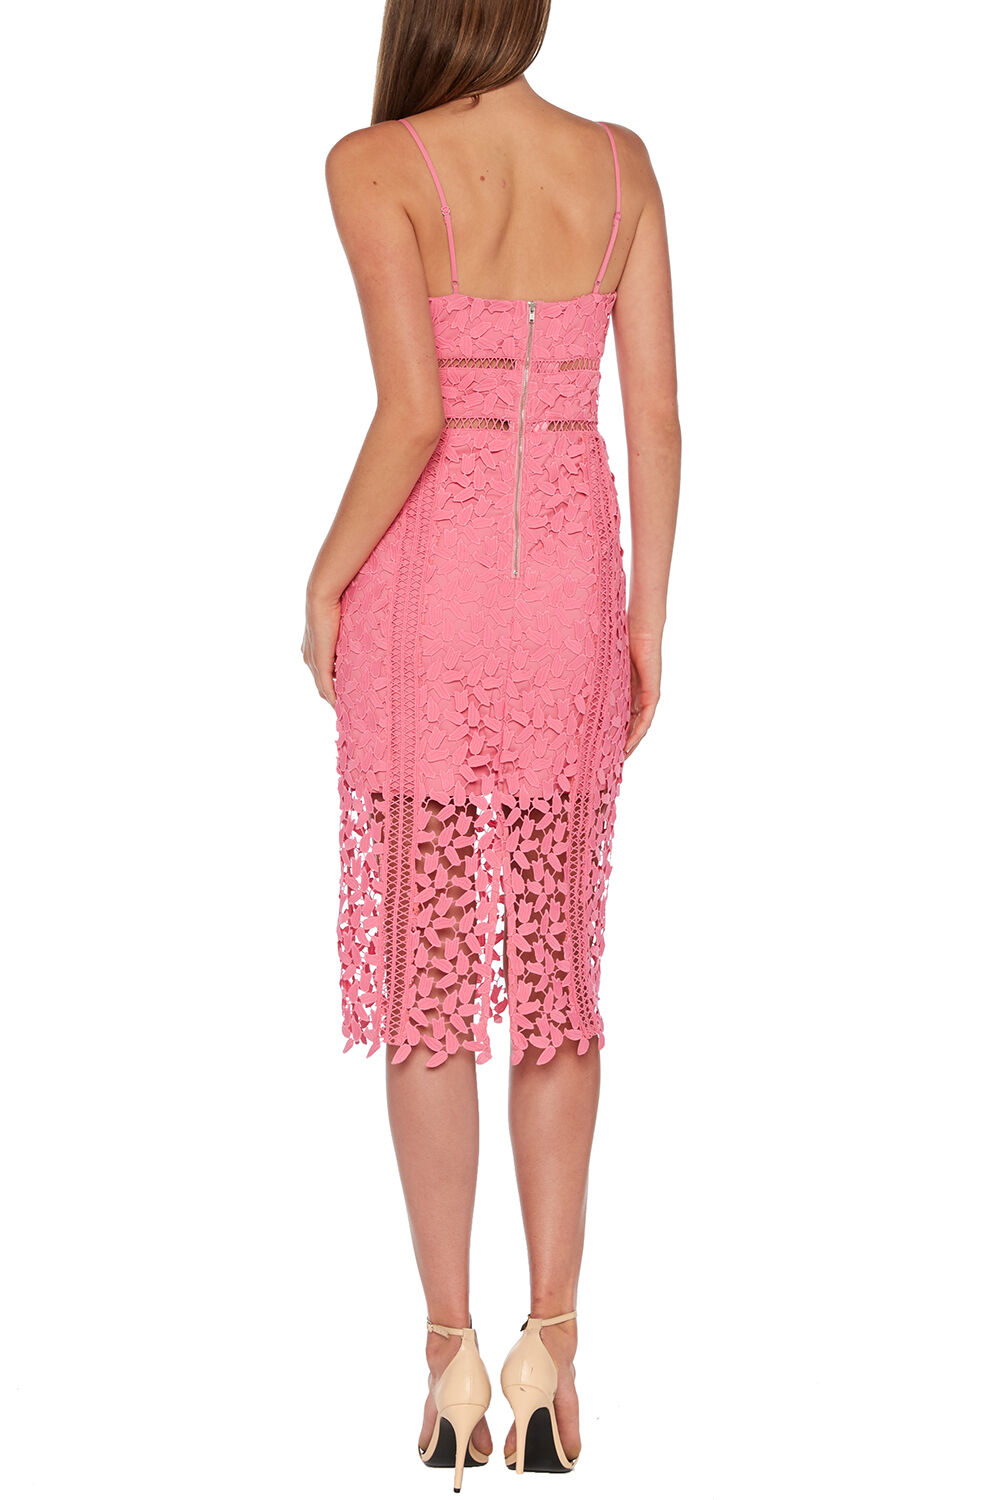 Roxy Lace Dress in Pink Pop | Bardot